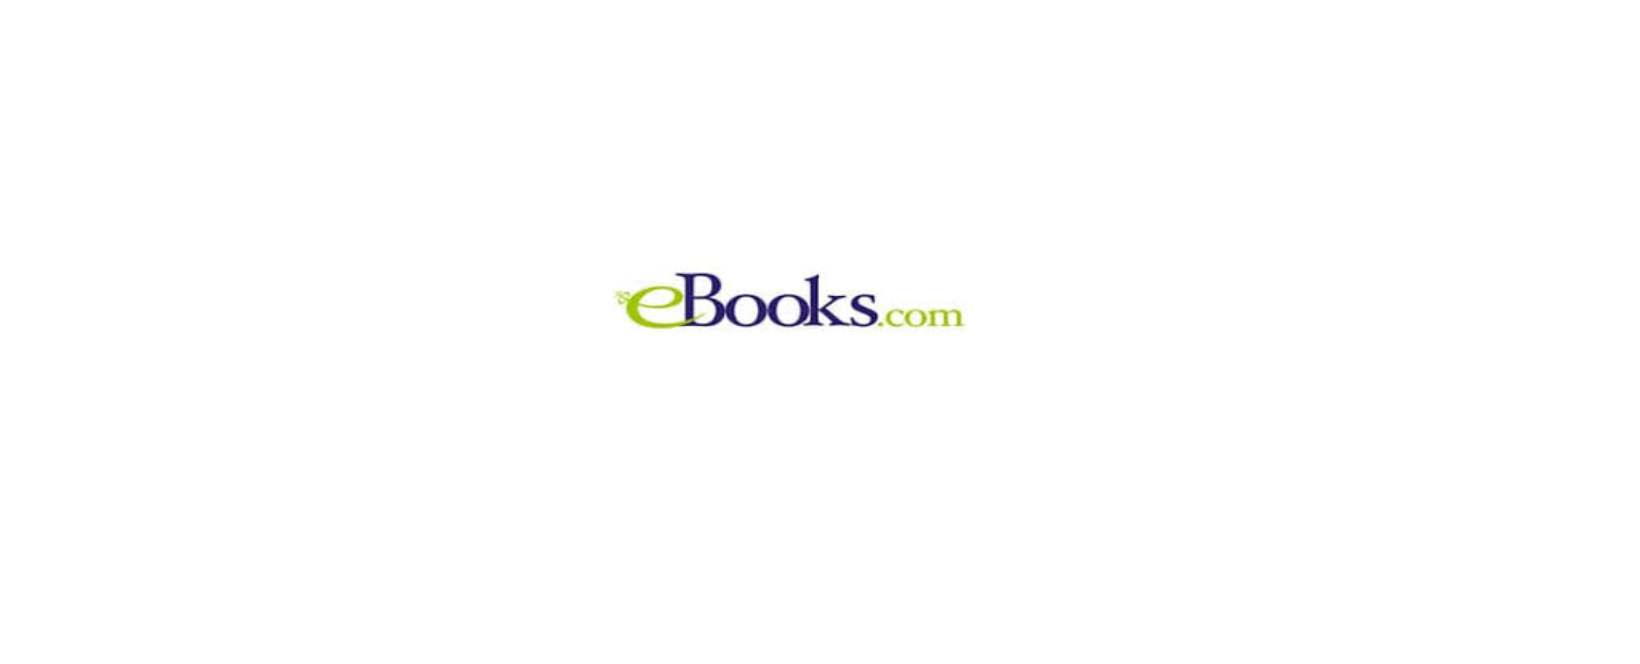 eBooks.com Discount Code 2022